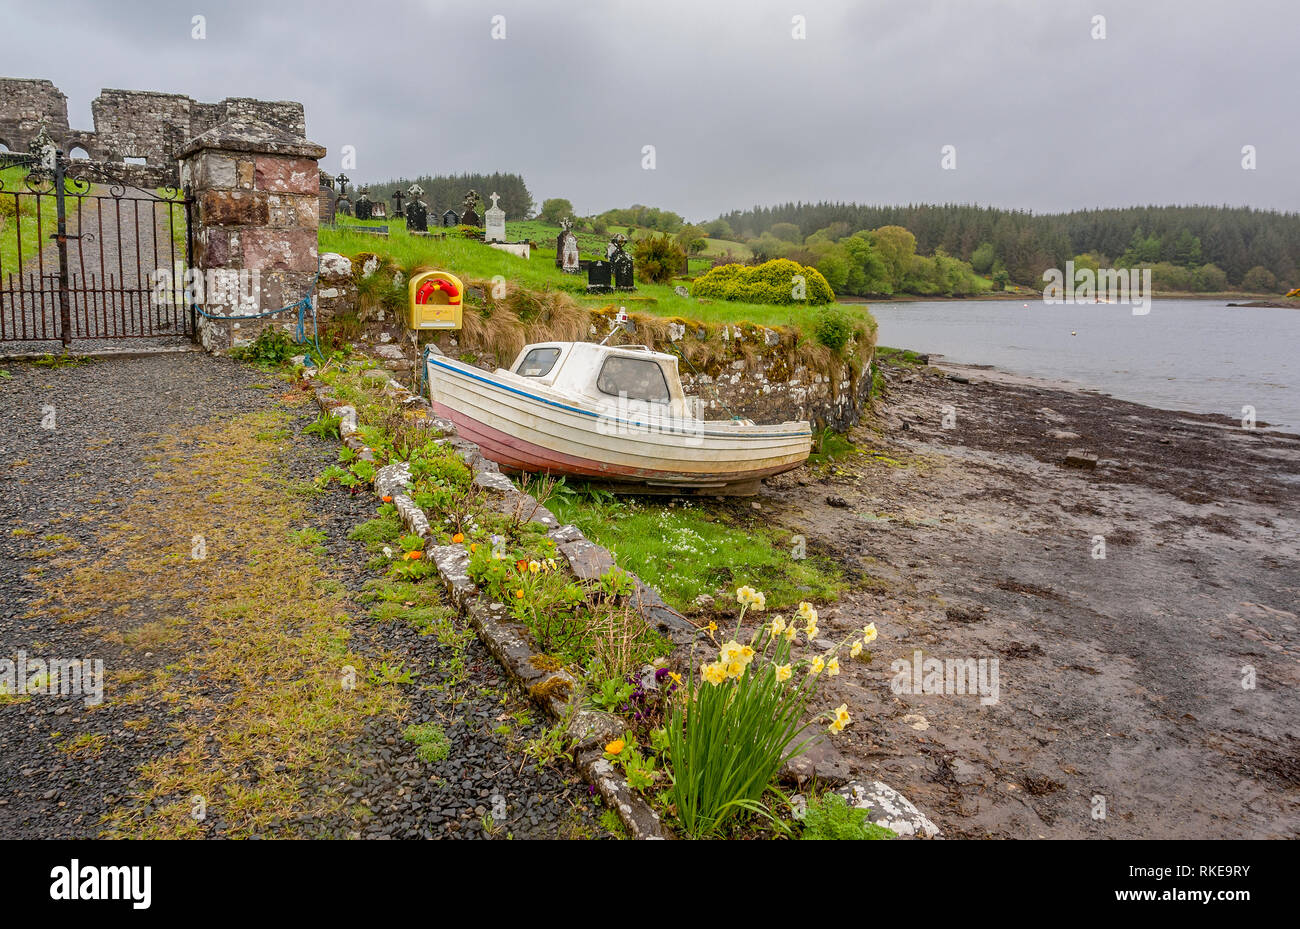 waterside scenery showing a old graveyard seen in Connemara, a region in Ireland Stock Photo